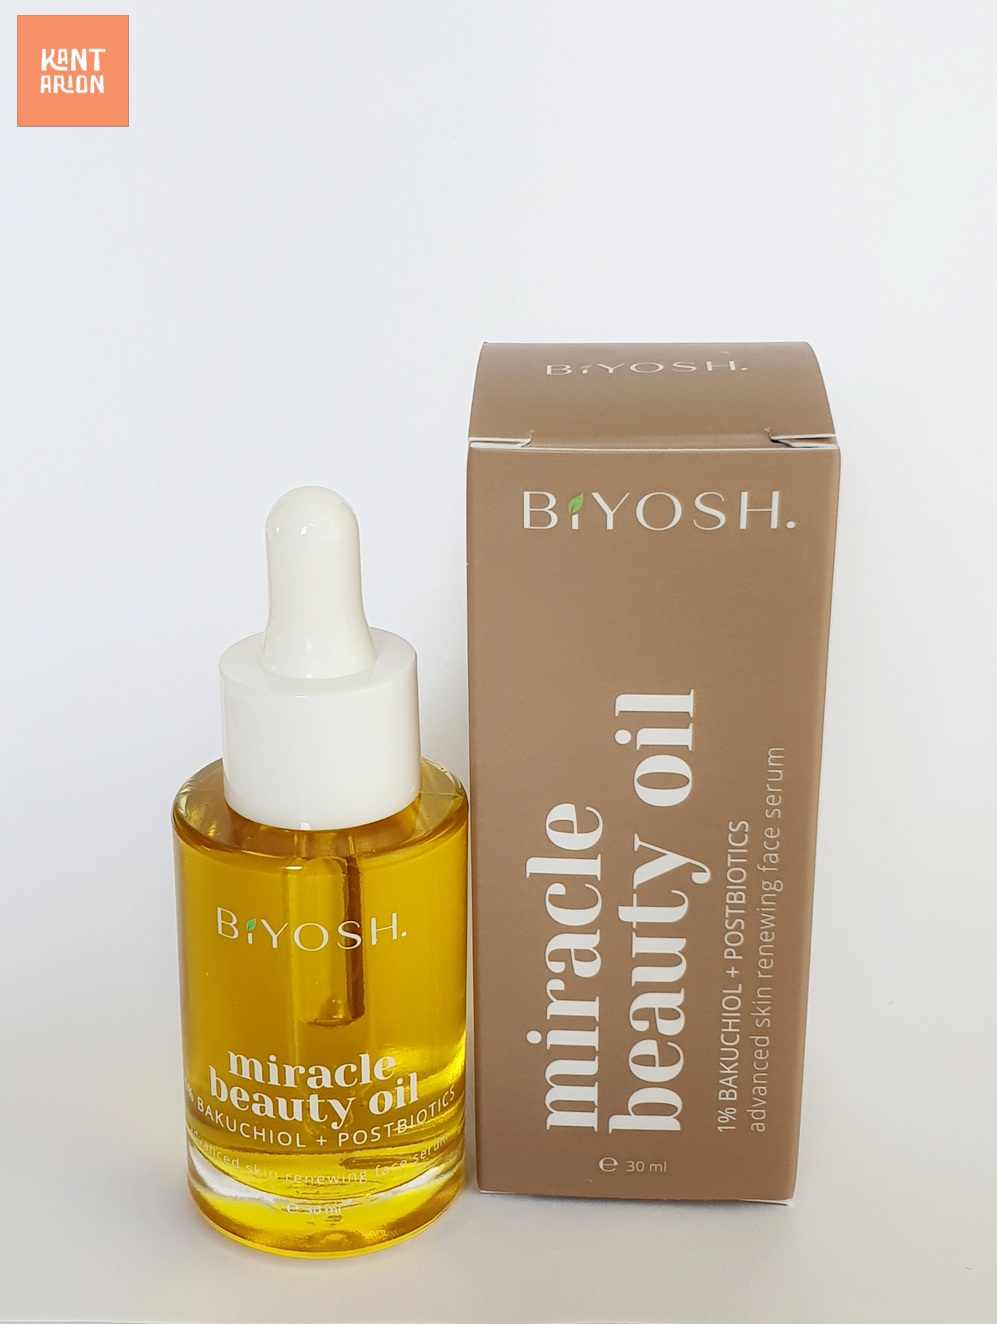 BIYOSH – Miracle beauty oil